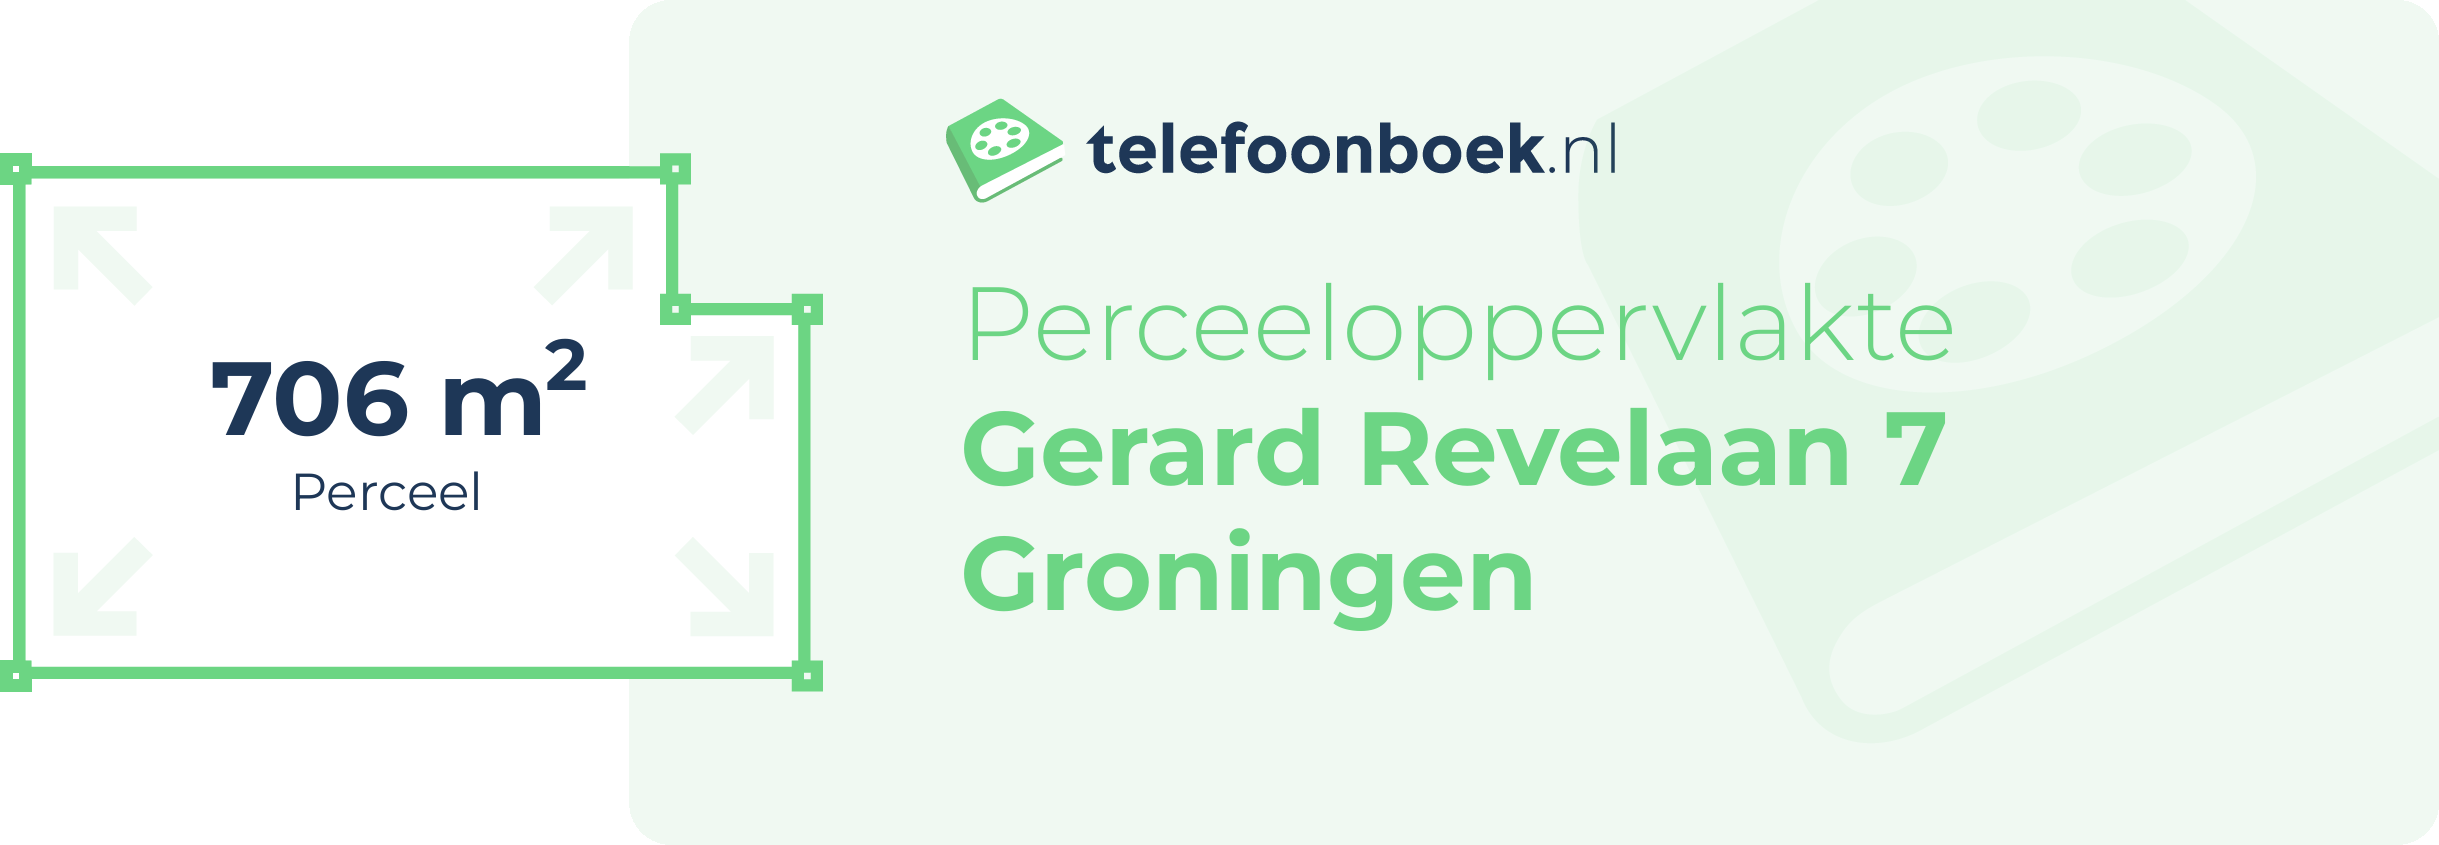 Perceeloppervlakte Gerard Revelaan 7 Groningen